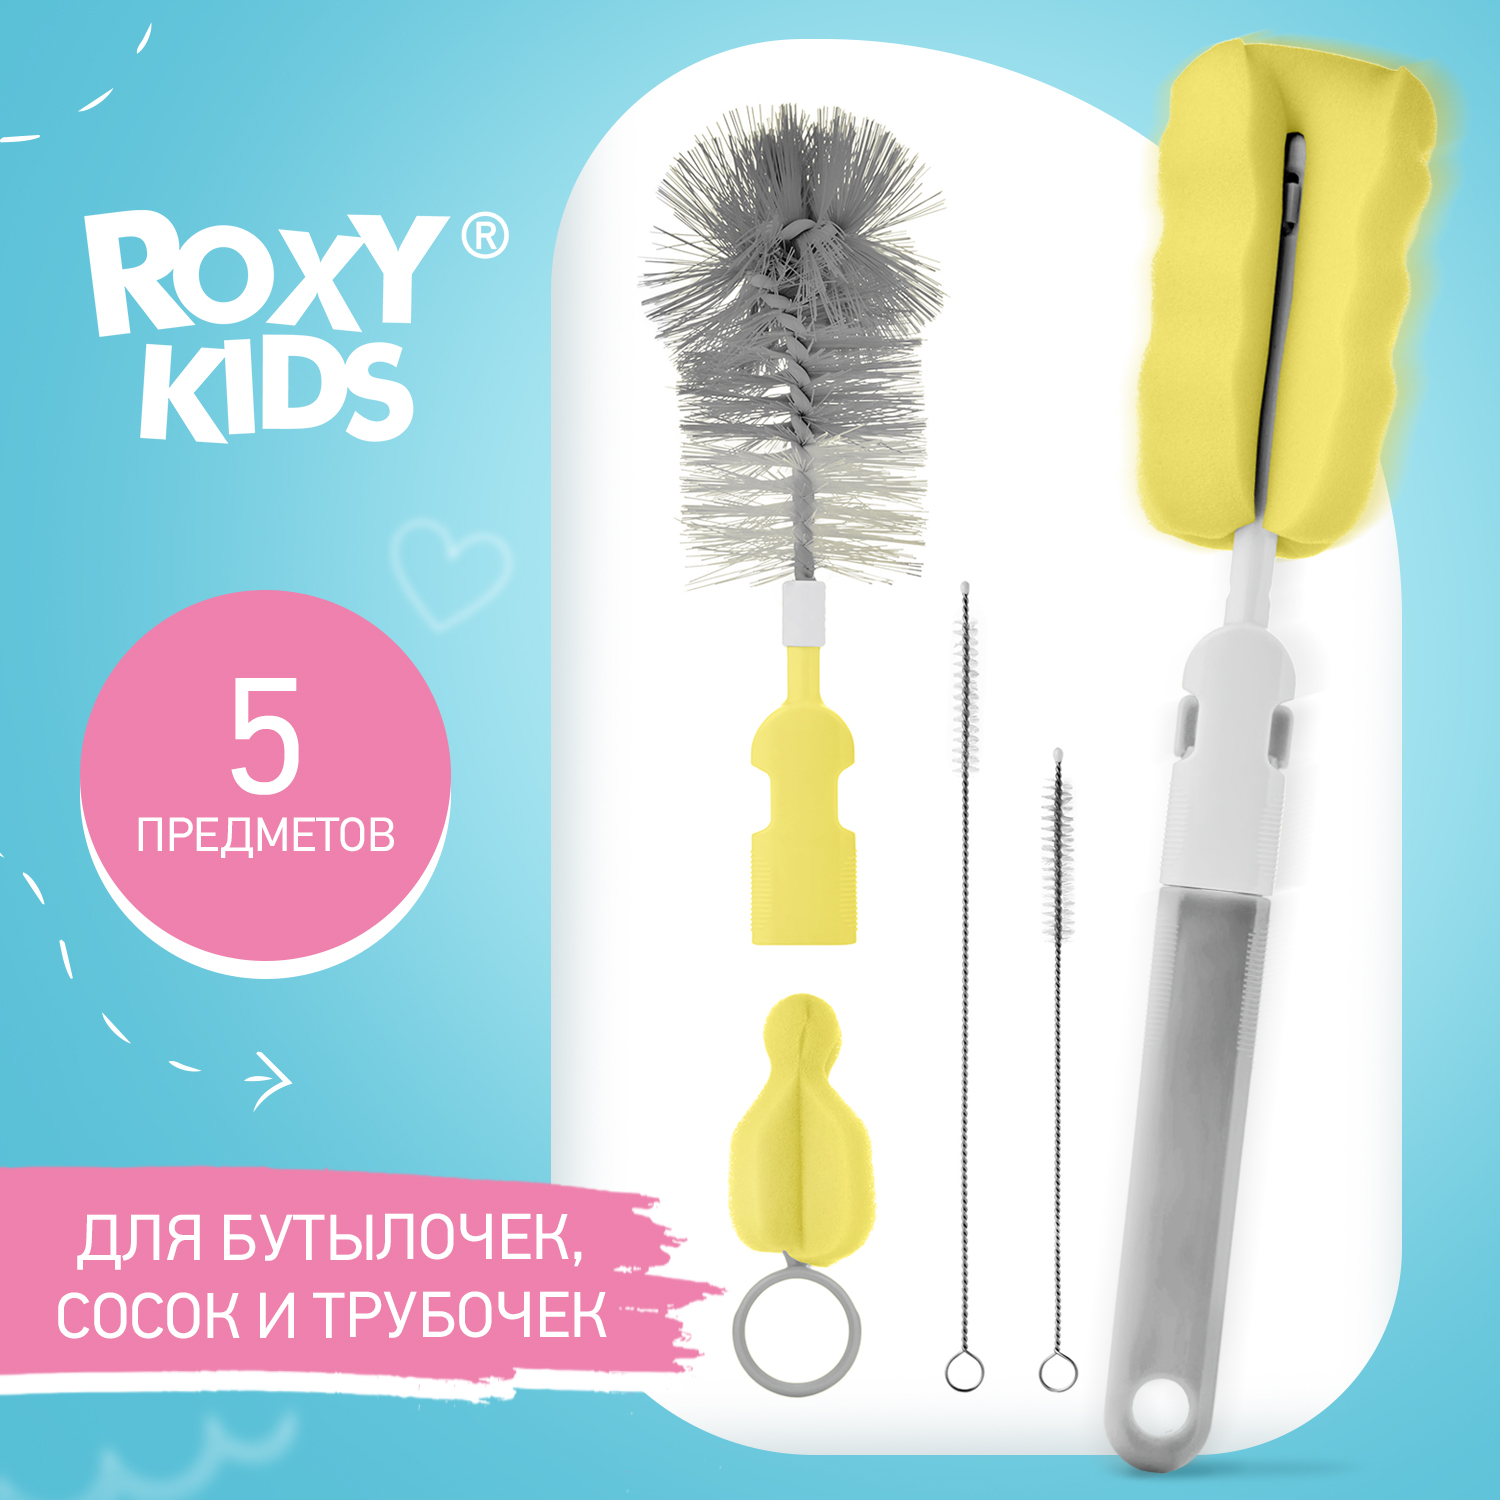 Набор ROXY-KIDS щеток и ершиков для мытья бутылочек и сосок - фото 1